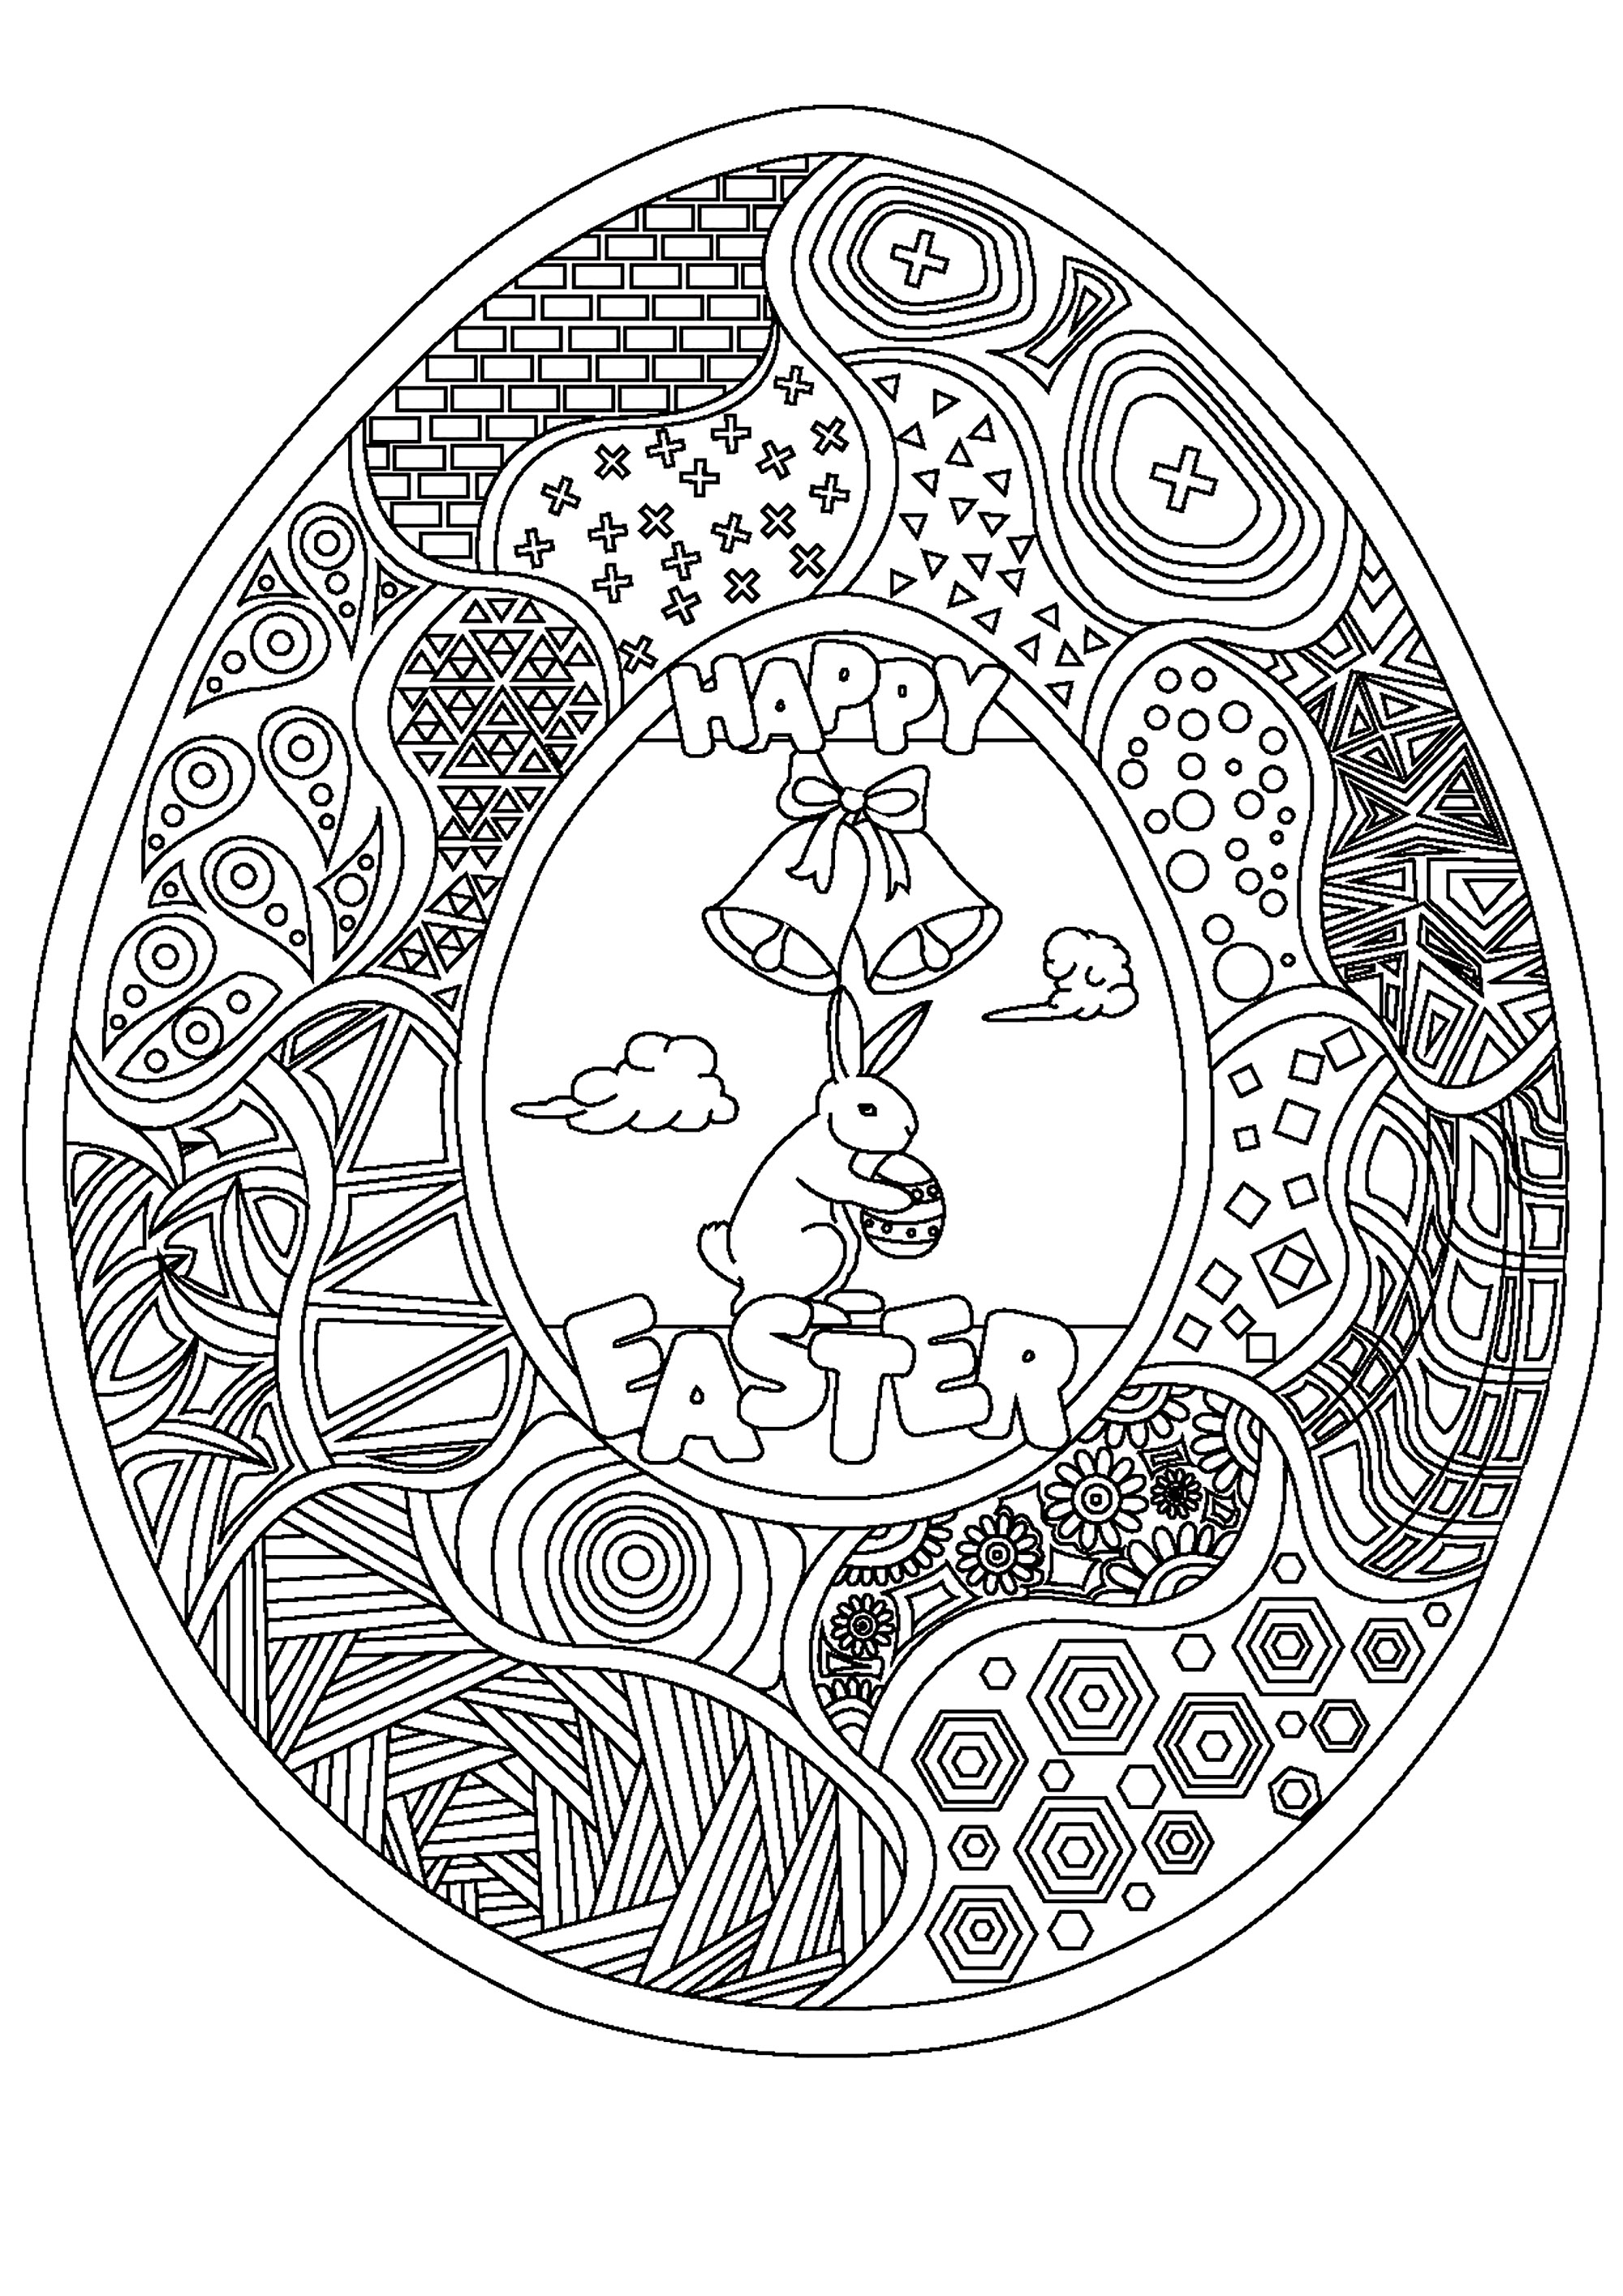 Página para colorear de huevos de Pascua con muchos dibujos, un simpático conejito y dos campanillas, Artista : Damien